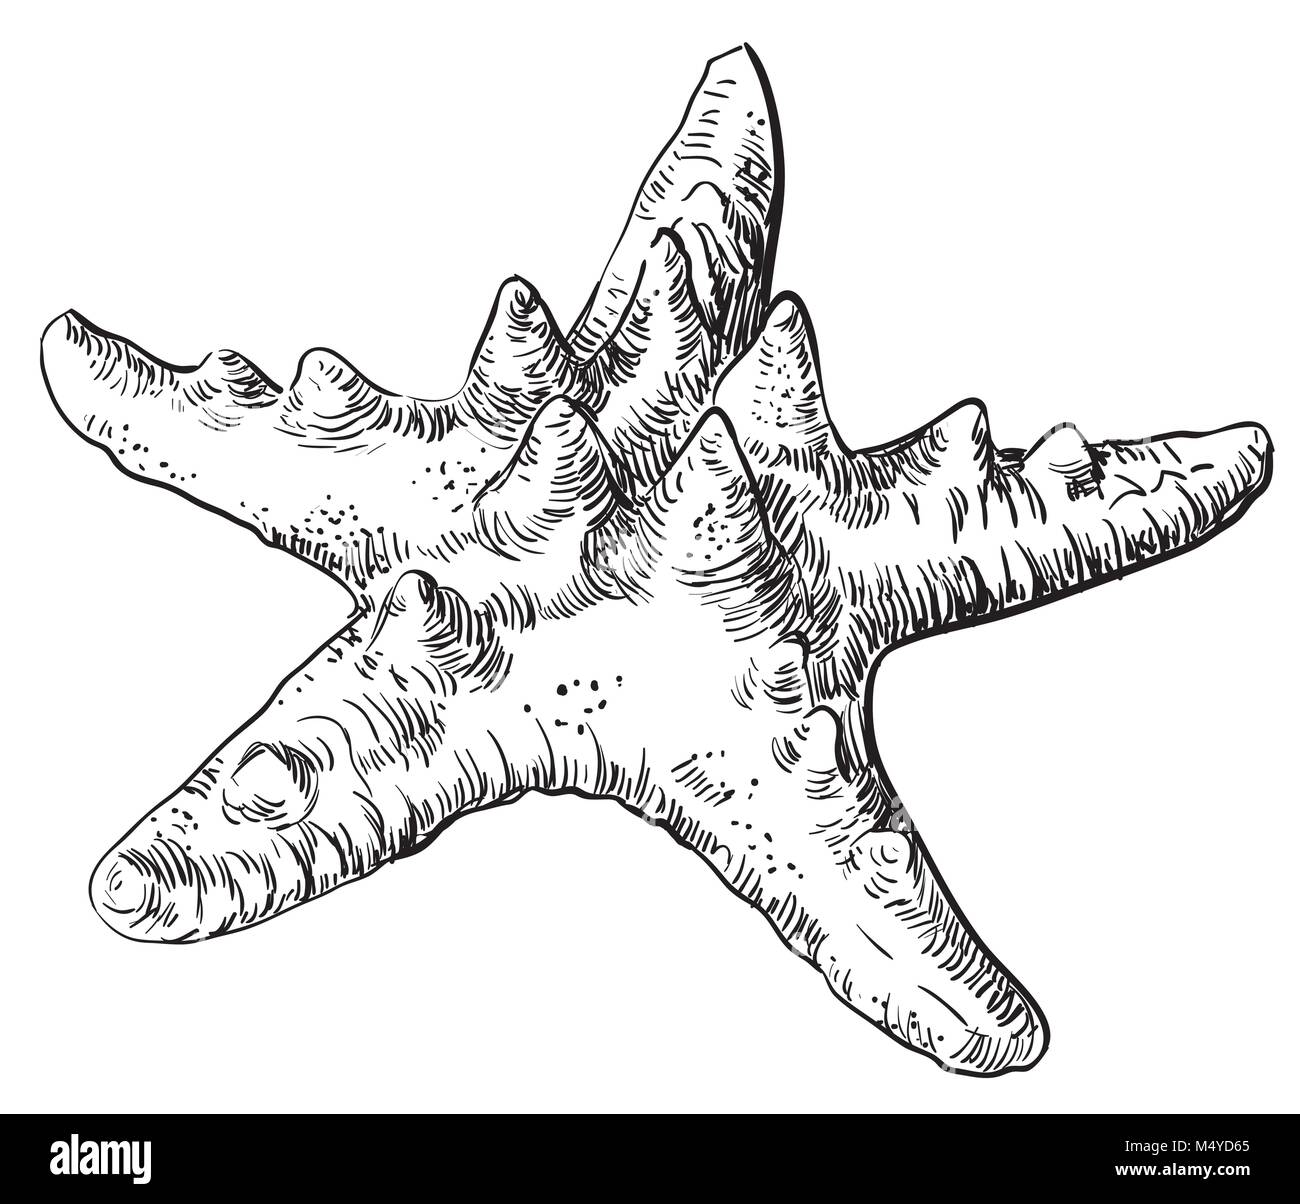 Dessin à la main de mer. Vector illustration monochrome de starfish en couleur noir isolé sur fond blanc Illustration de Vecteur